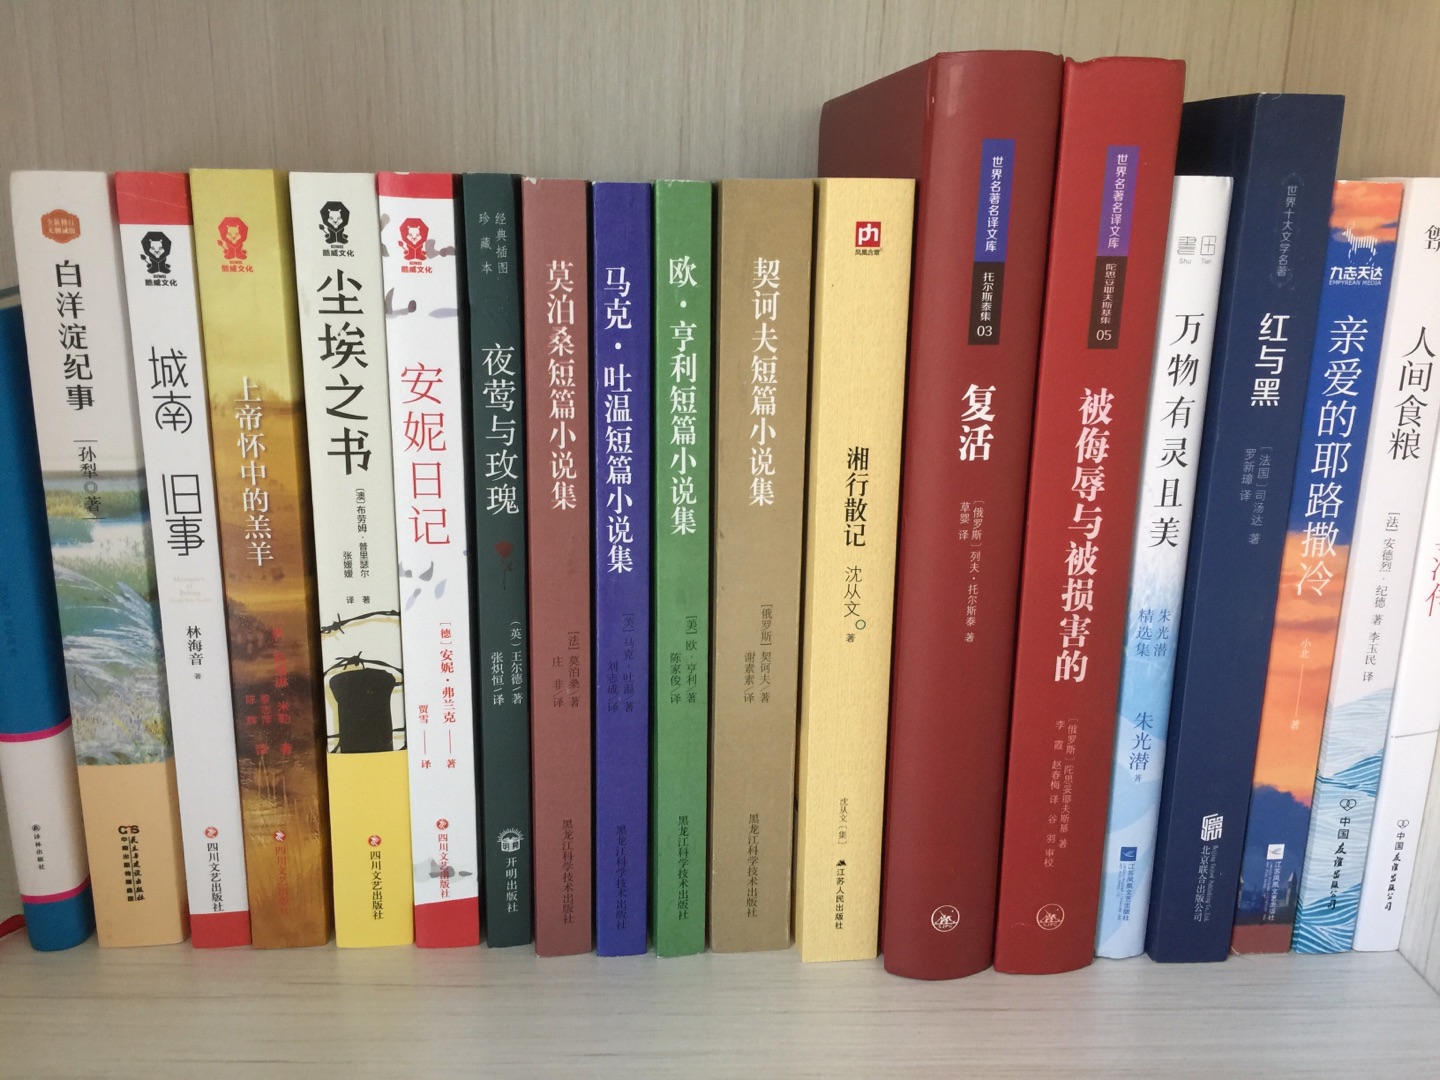 物流快，服务好，九十九元十本，还不错，尤其是上海三联出版社的，值得购买。